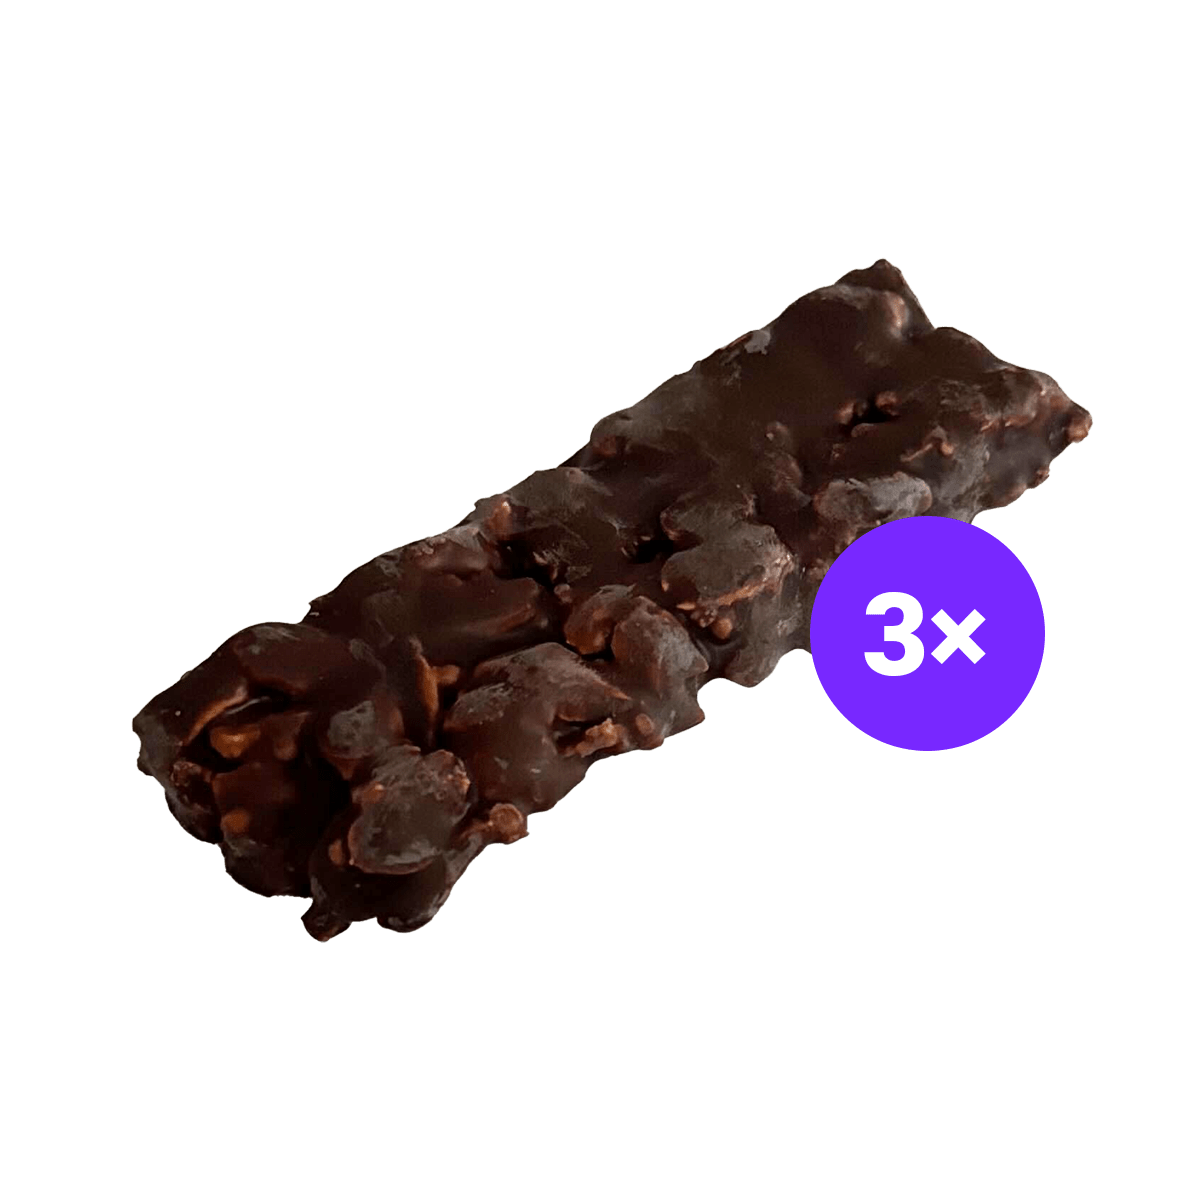 Just Legends Nussriegel Peanut Butter & Dark Chocolate | Funktionaler, veganer Xmas Product auf Pulverbasis ohne Zucker, mit wenig Kalorien, vielen Vitaminen und natürlichen Aromen.